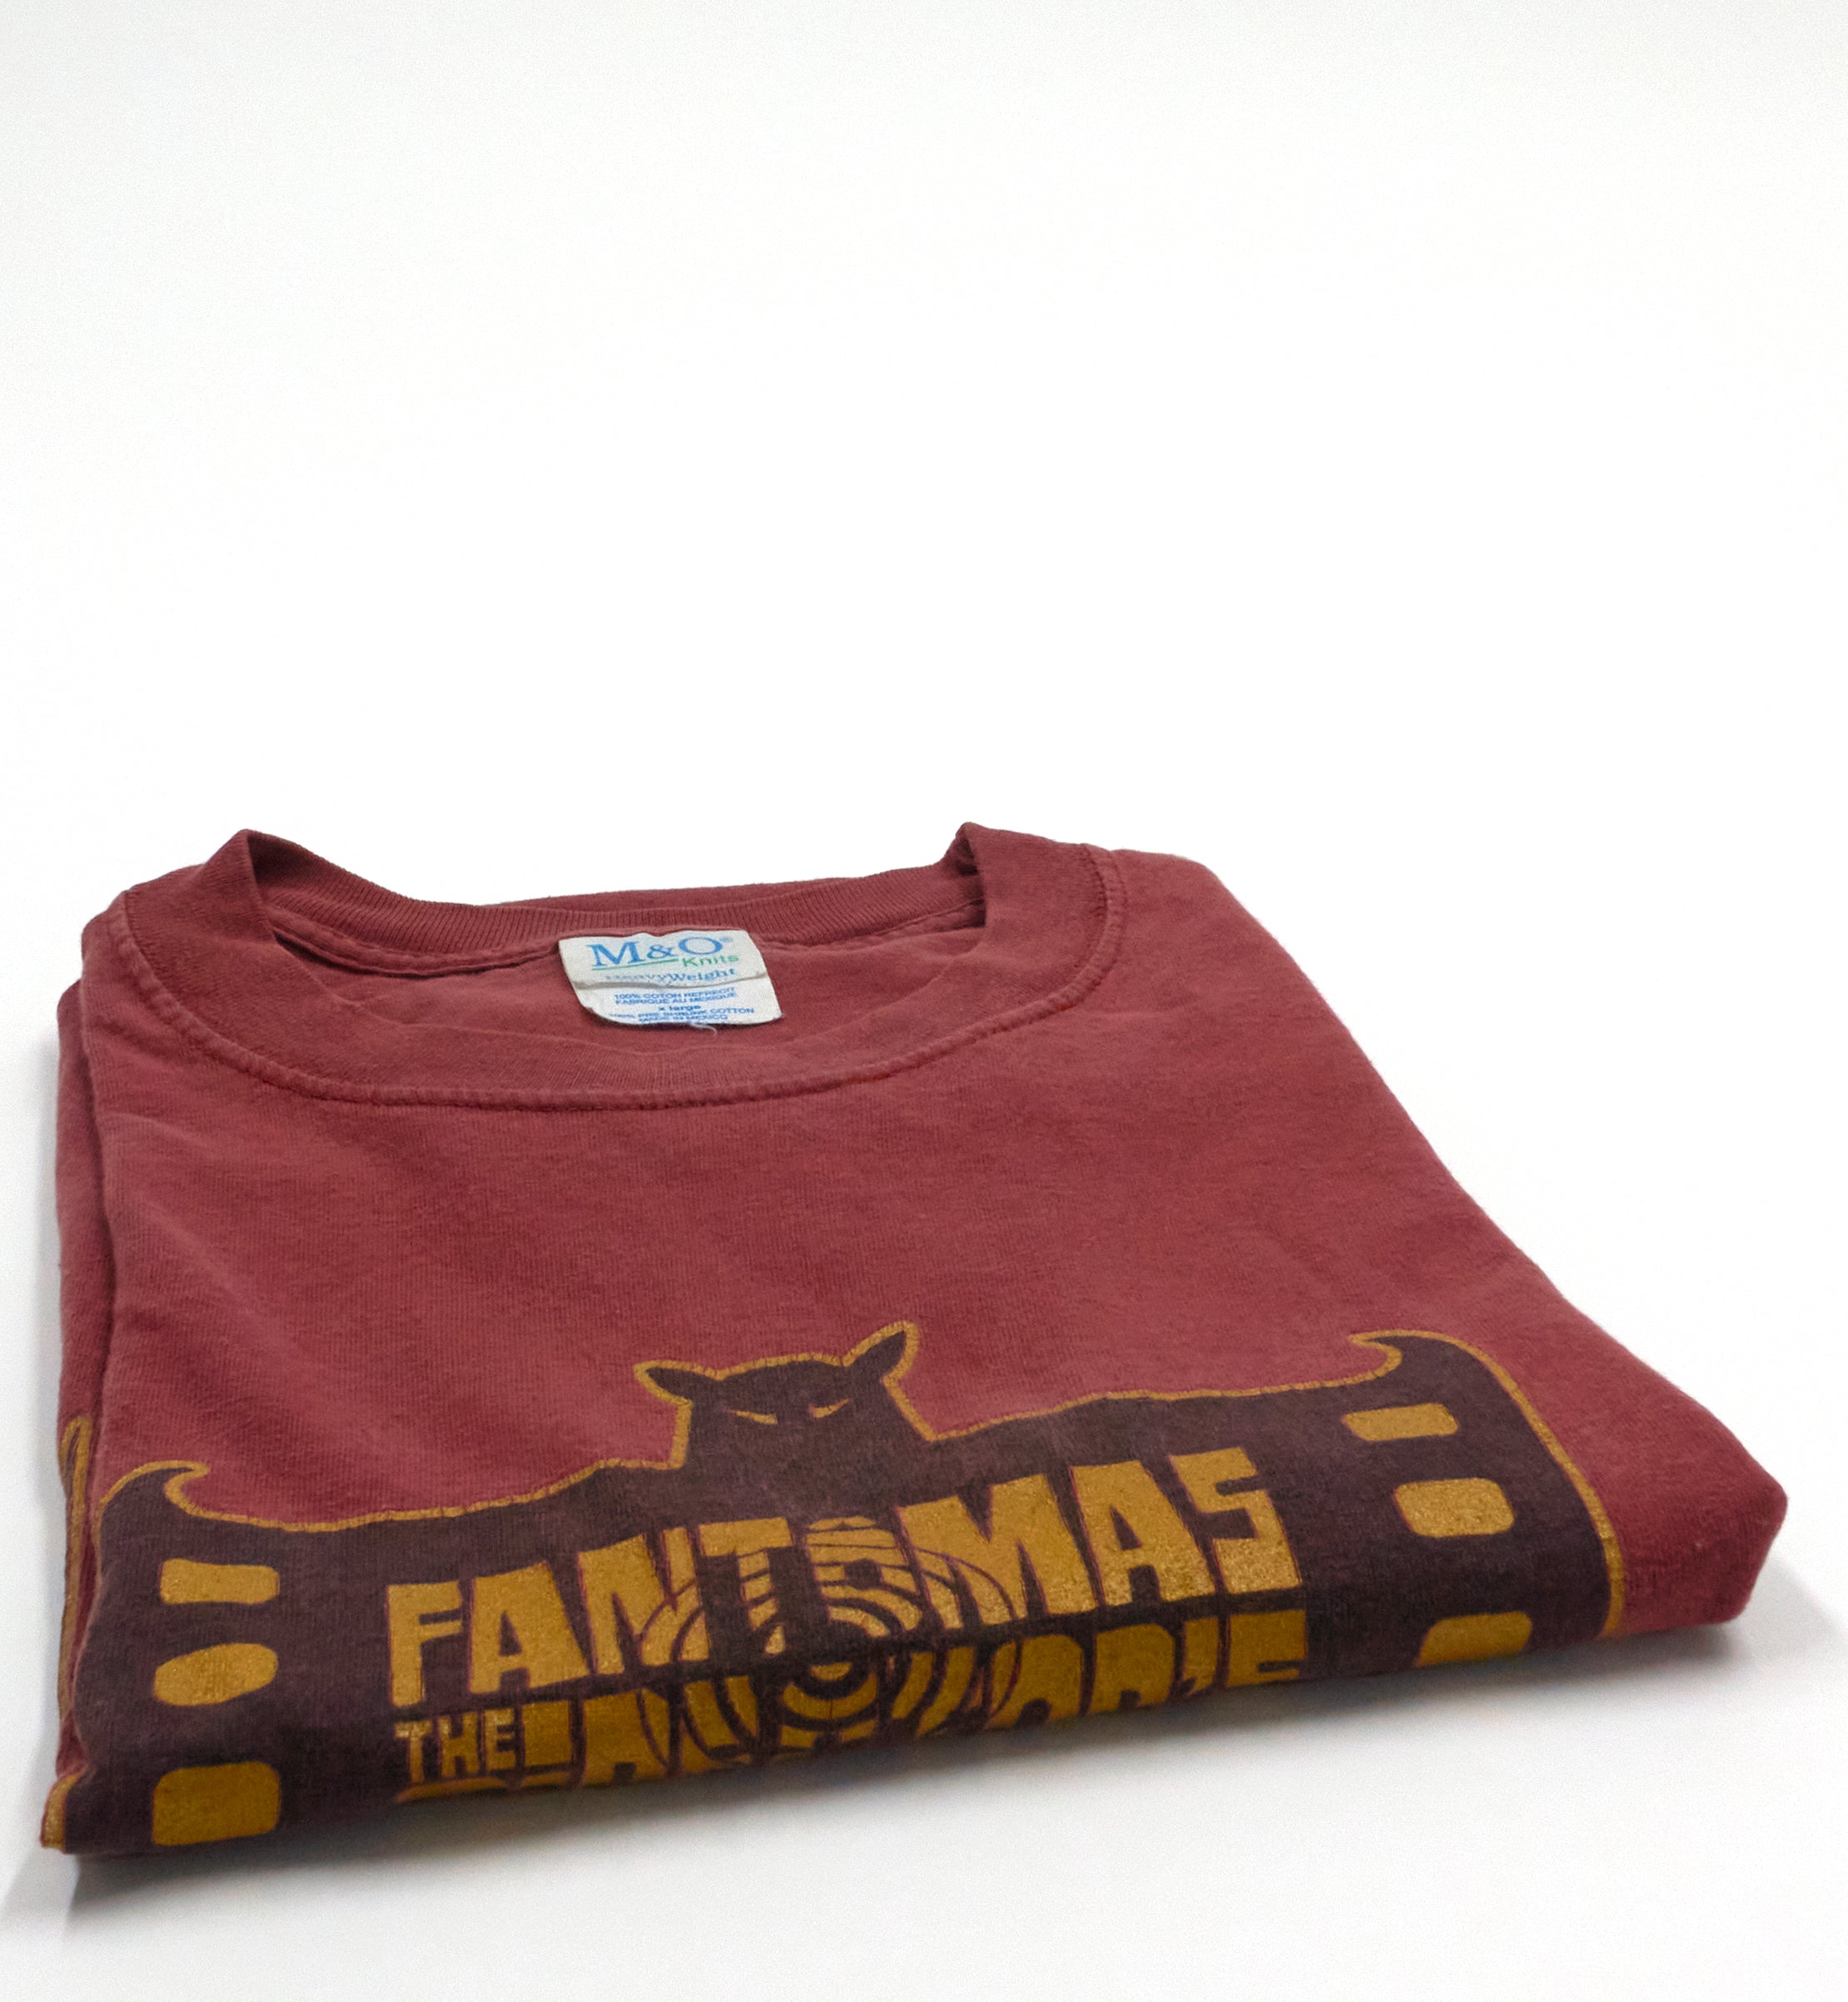 Fantômas - the Director's Cut 2001 Tour Issue Shirt Size XL